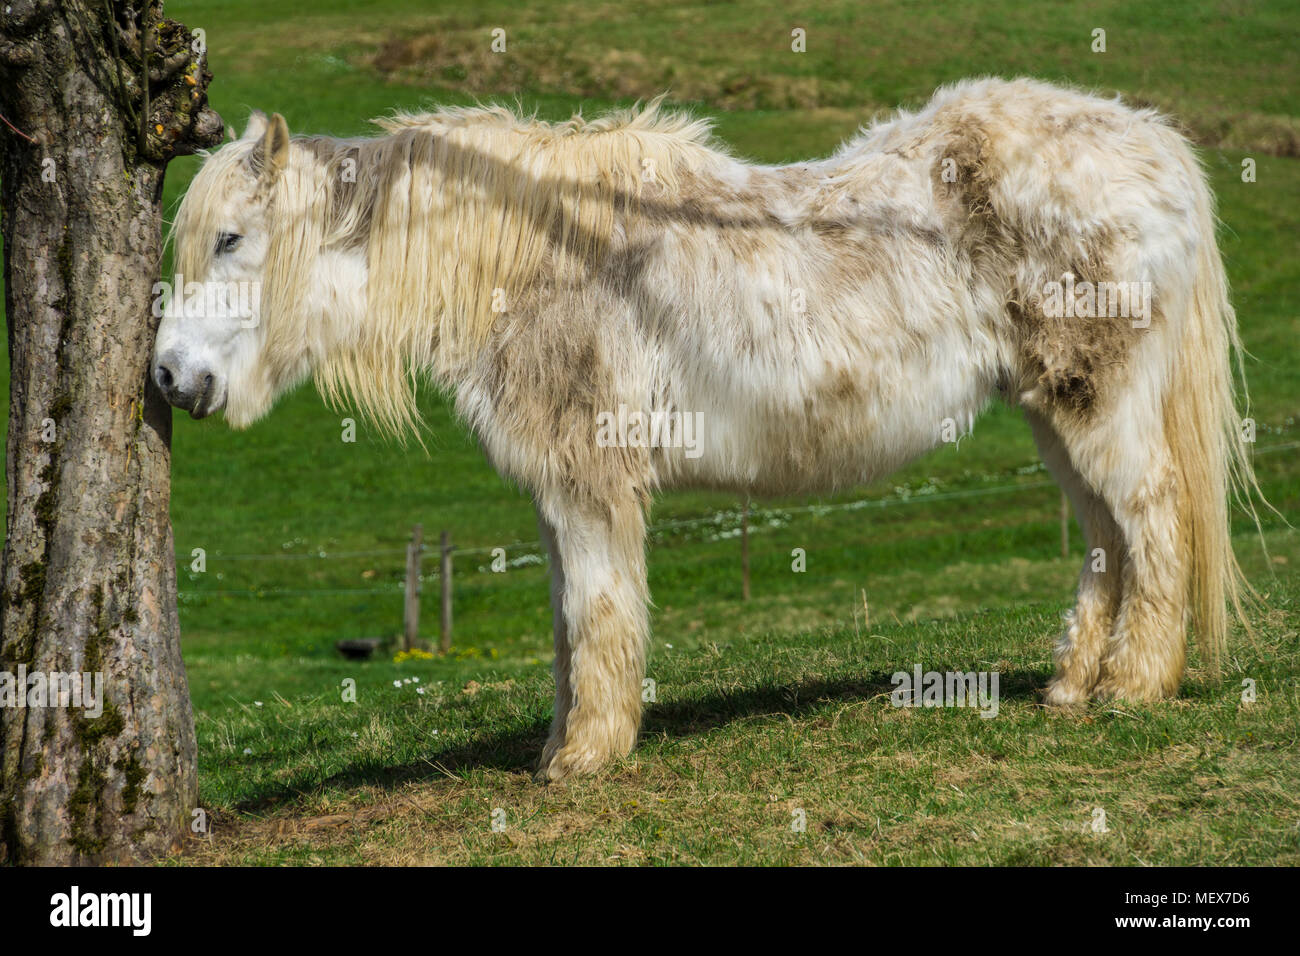 Germania, bellezza cavallo con lungo pelo bianco in piedi accanto ad albero, vista laterale Foto Stock